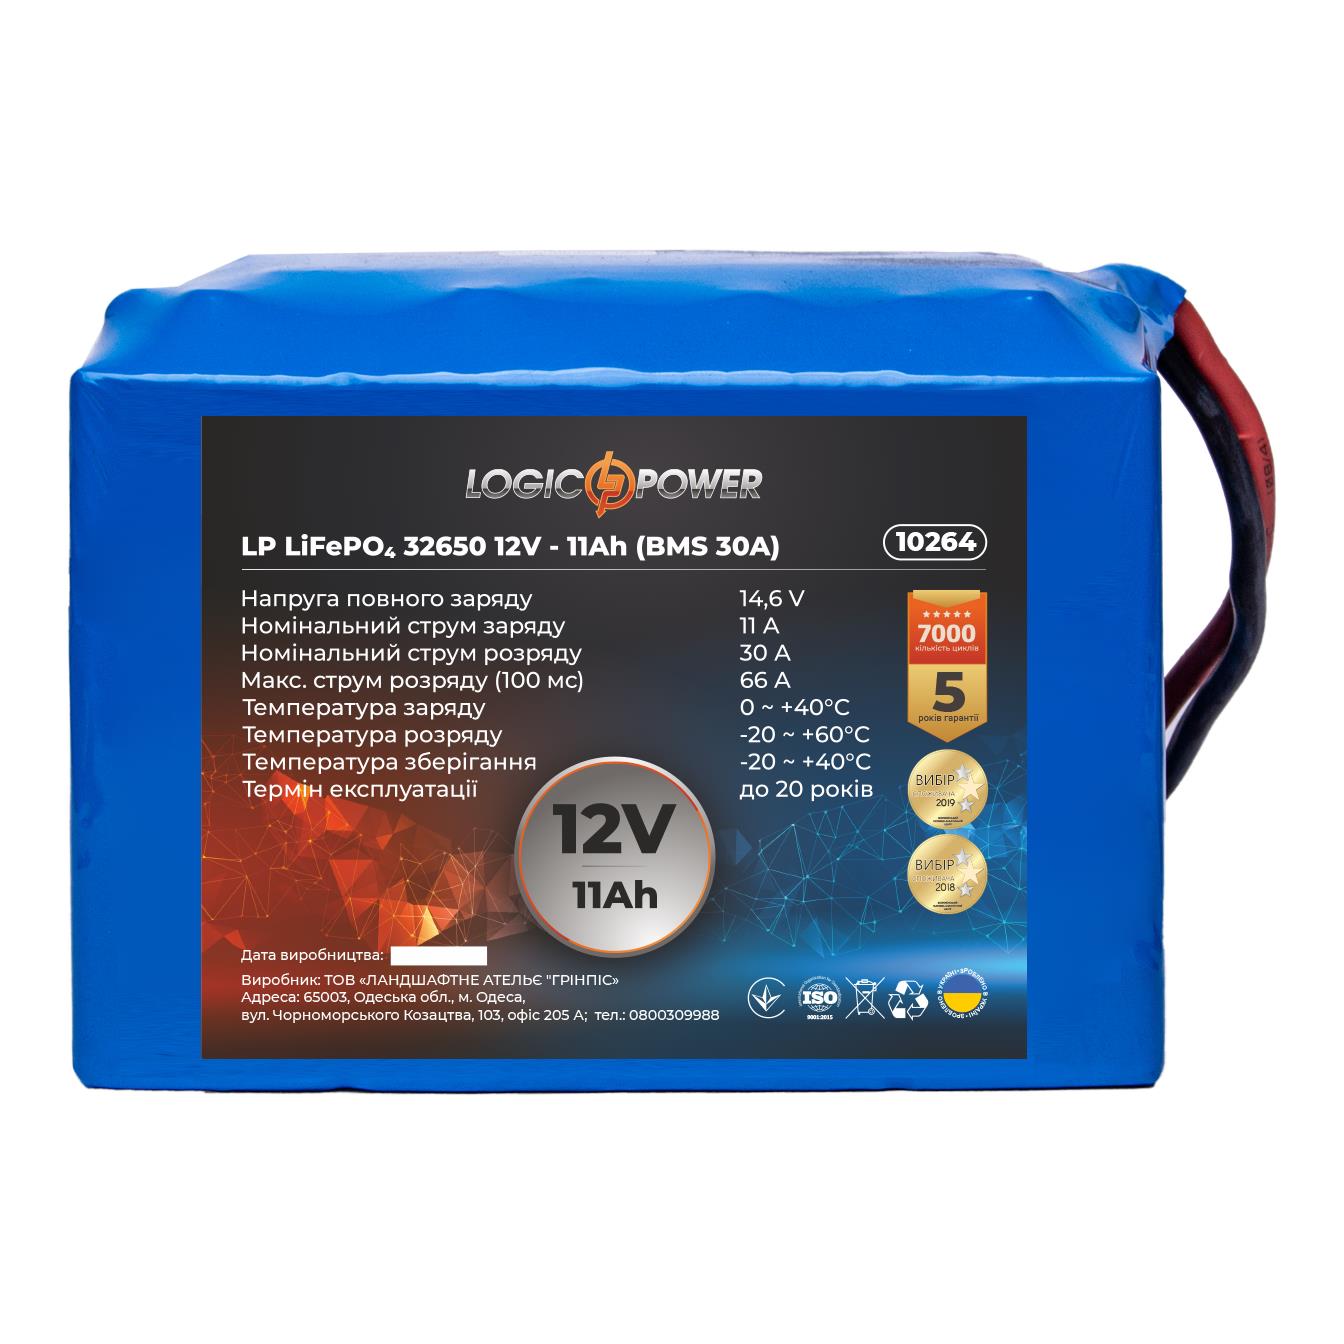 Цена аккумулятор 11 a·h LogicPower LP LiFePO4 32650 12V - 11 Ah (BMS 30A) (10264) в Киеве